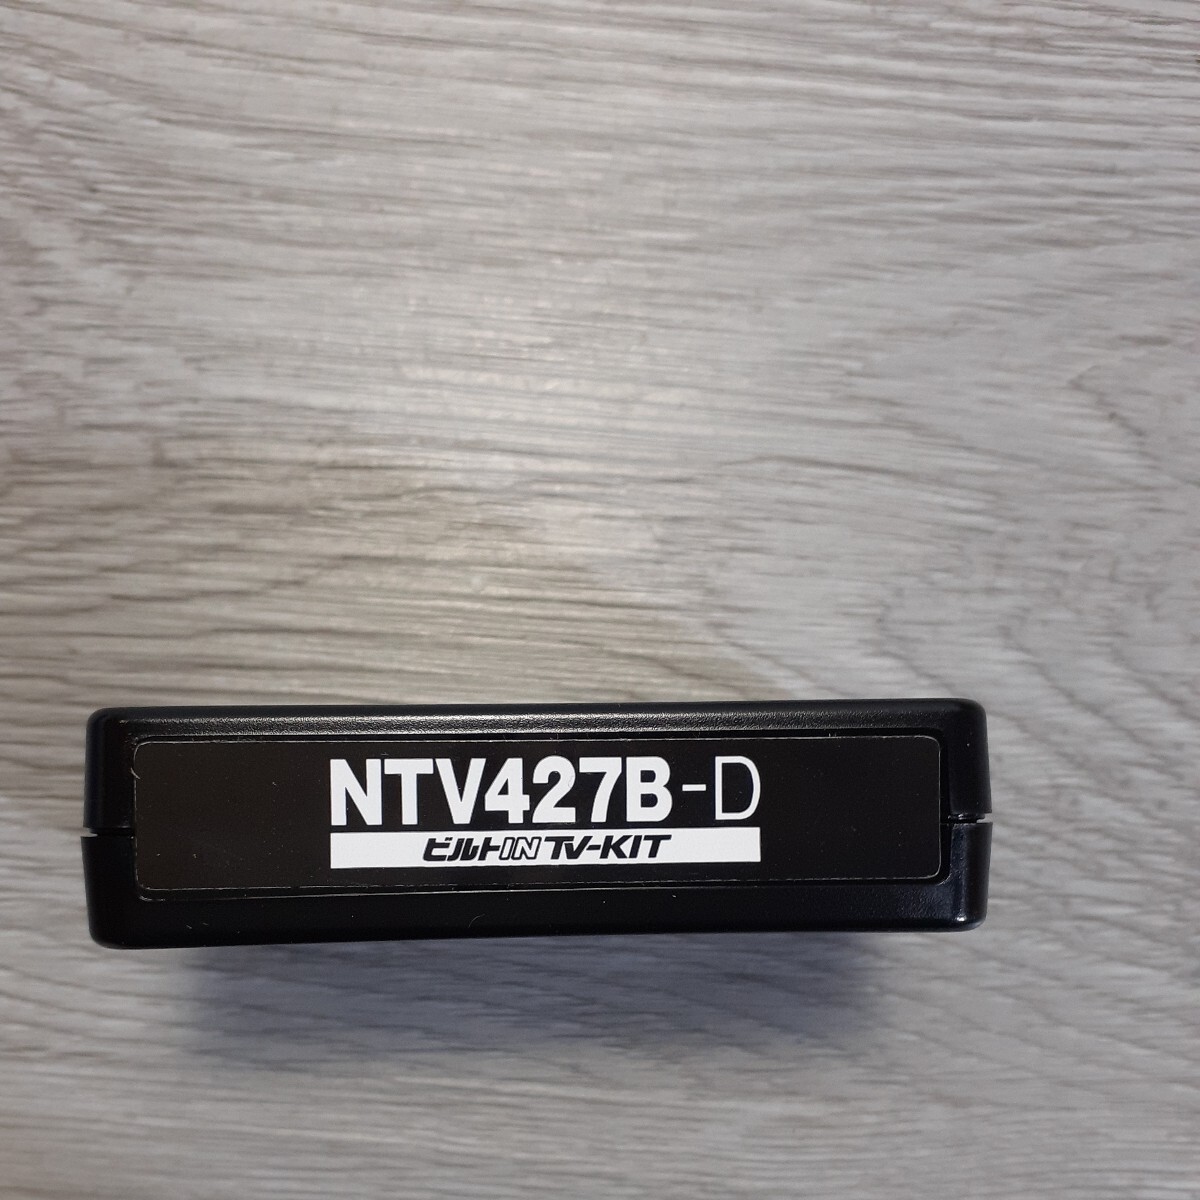 y032808r データシステム テレビキット ビルトインタイプ 日産ノート オーラ用 TSW018 付属 NTV427B-D Datasystem テレビキャンセラー_画像6